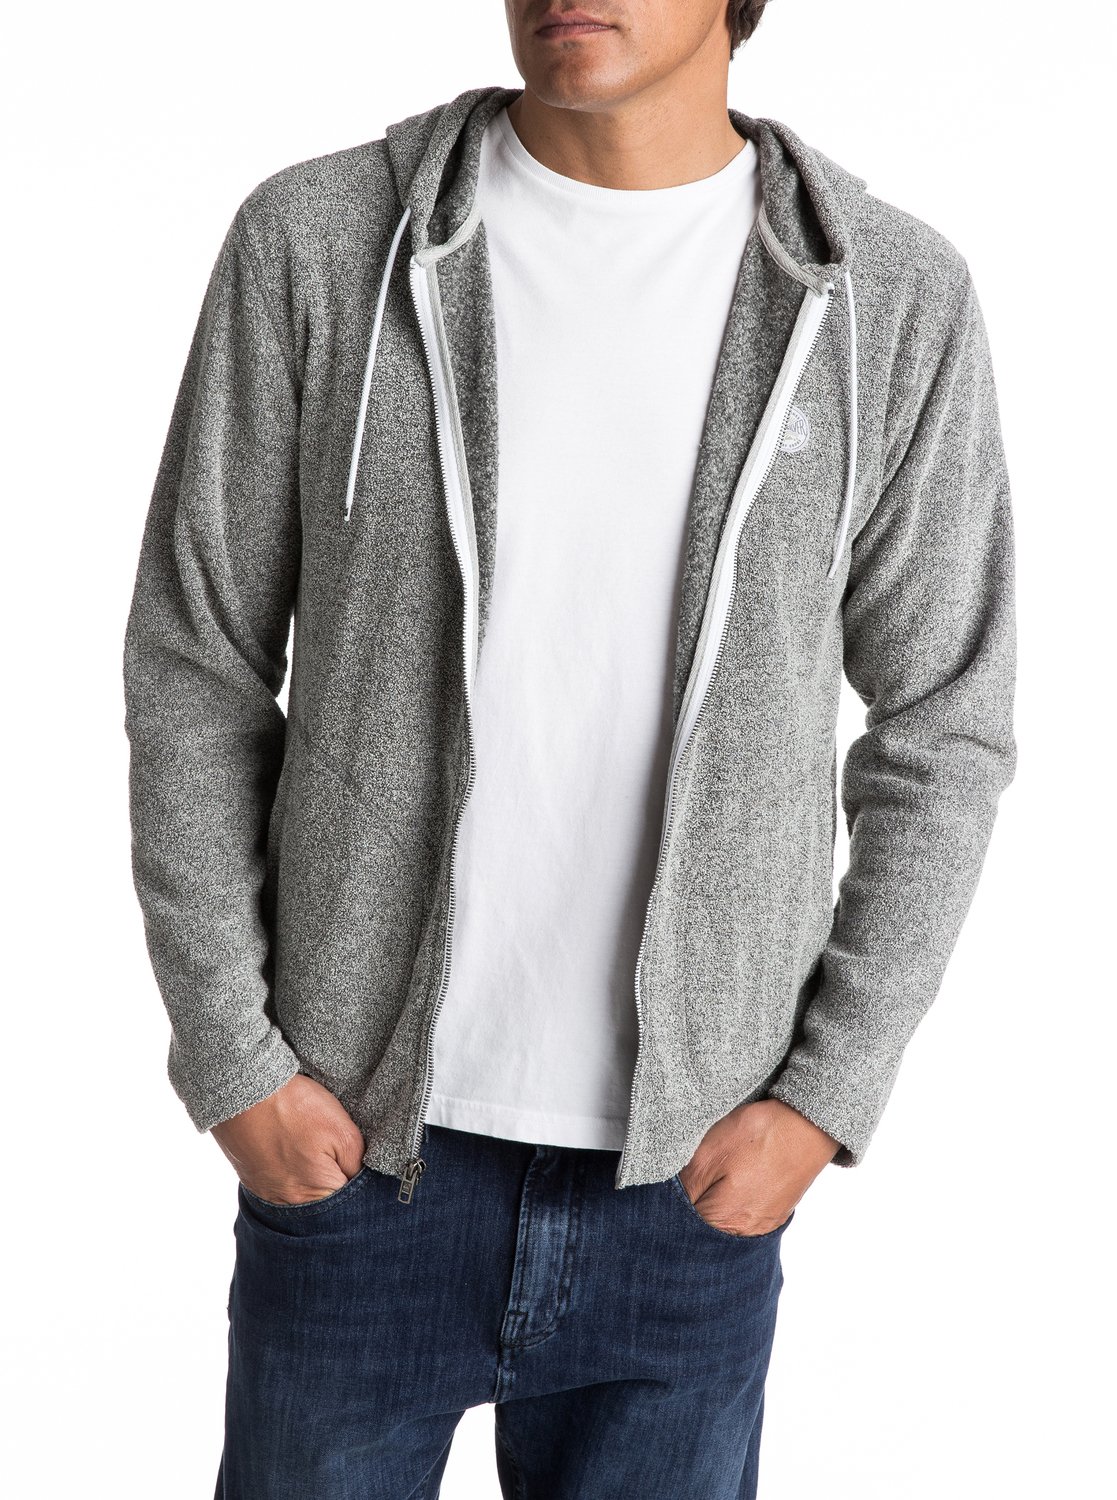 Oversized Dark Grey Zip Up Hoodie - ASOS DESIGN oversized zip up hoodie ...